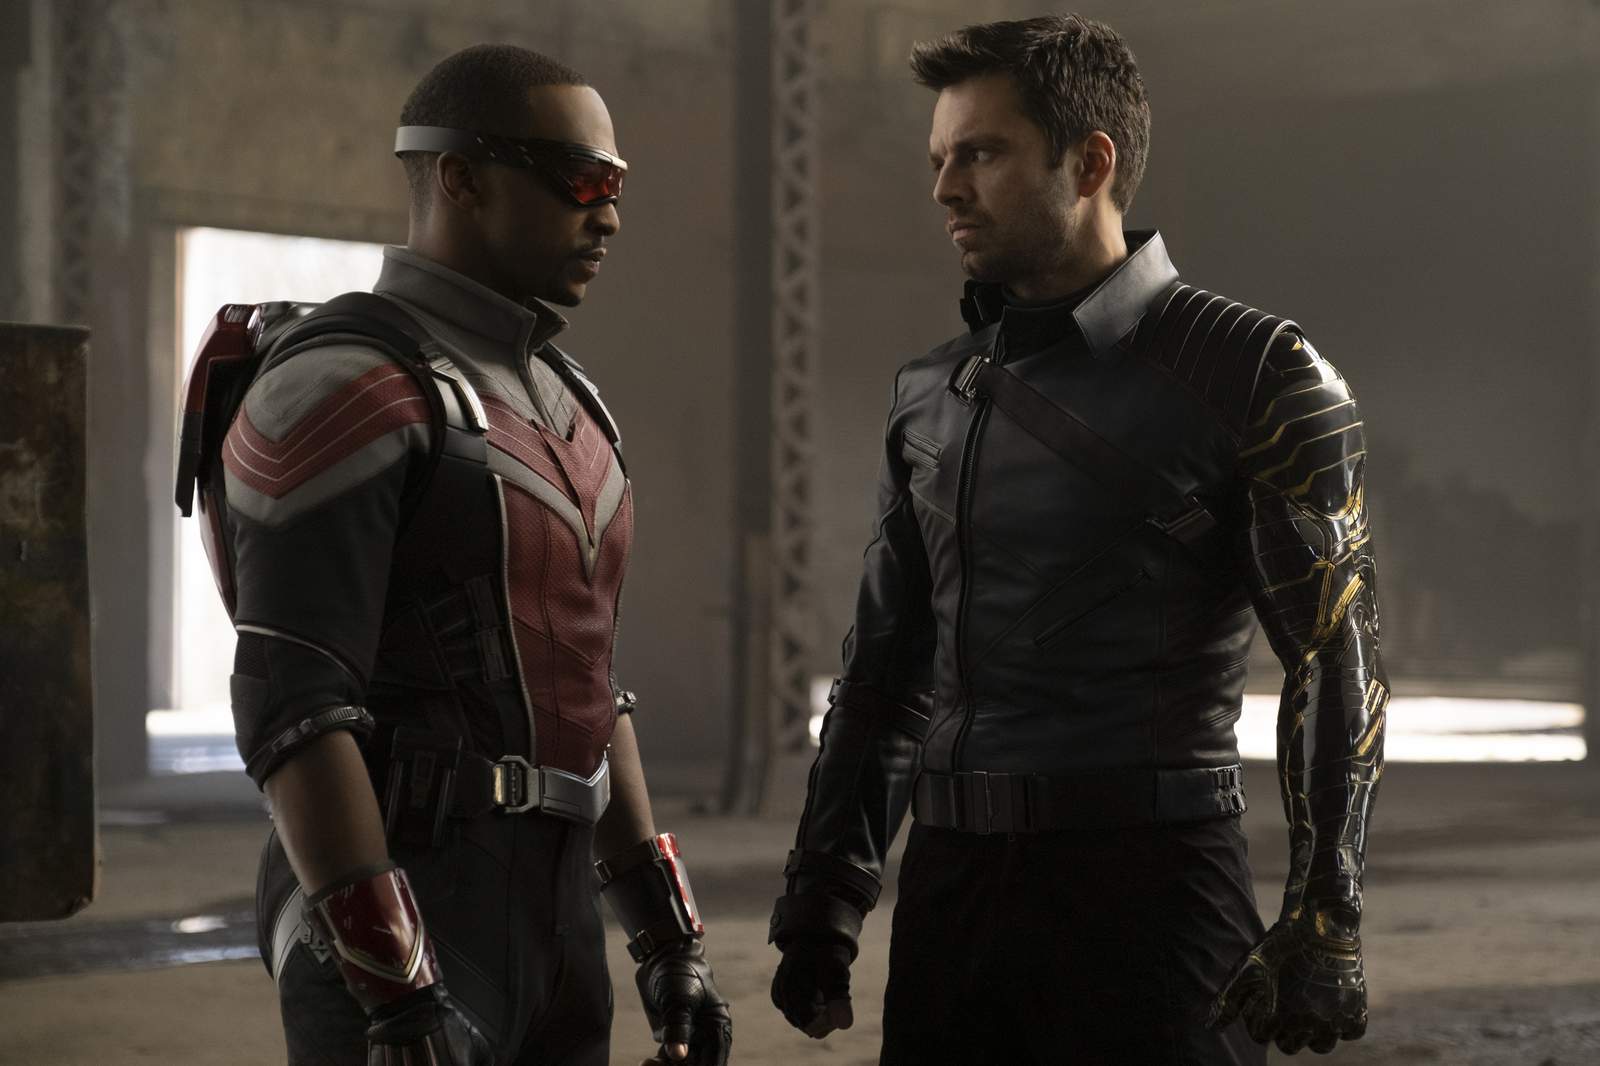 Marvel's 'Falcon' promises action, explores race, patriotism